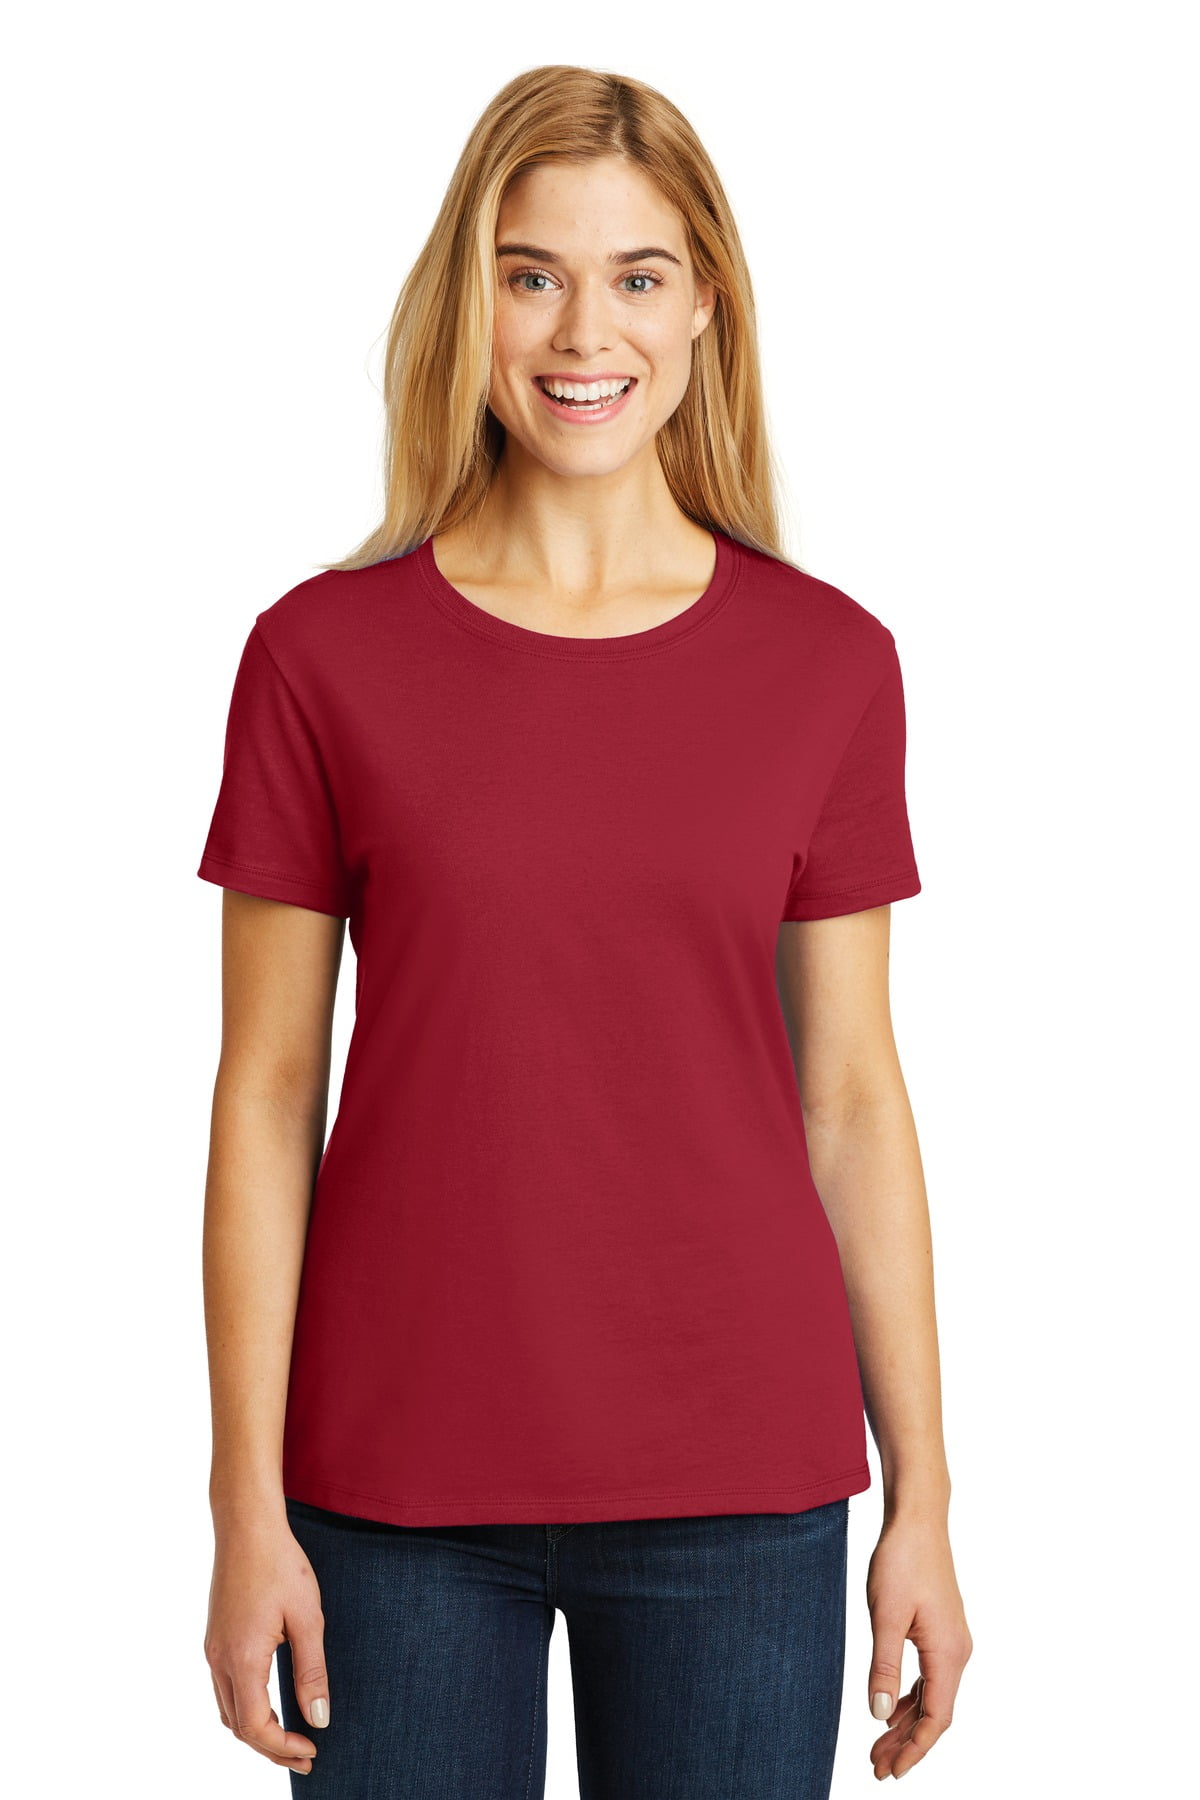 Hanes Ladies Nano-T Cotton T-Shirt - Walmart.com